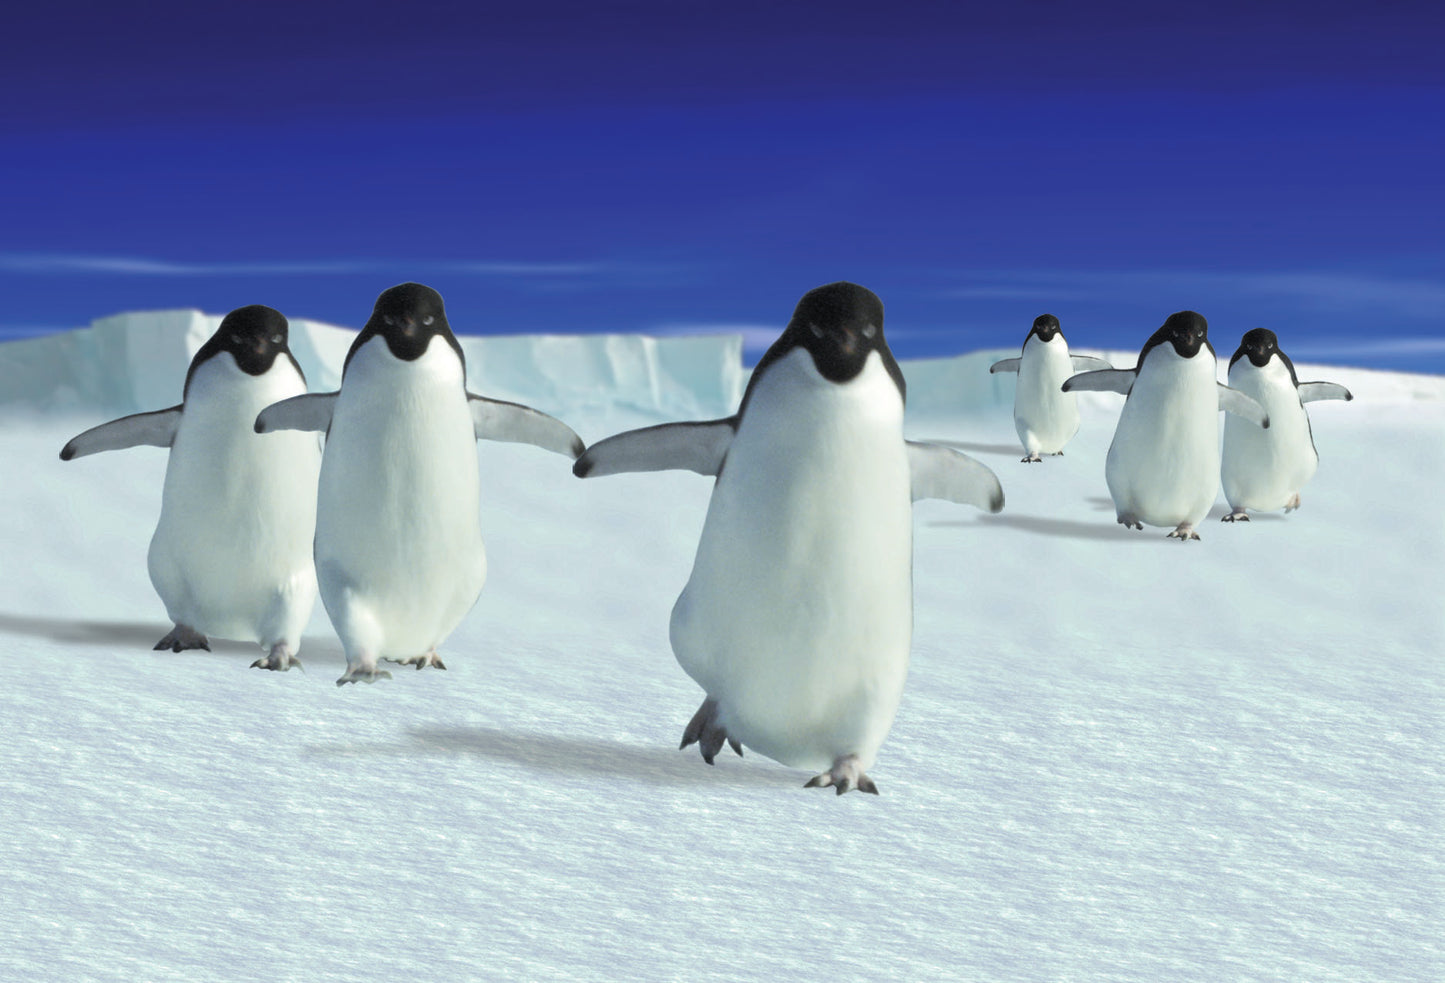 SKU : 20315 - Penguins - Motion Postcard